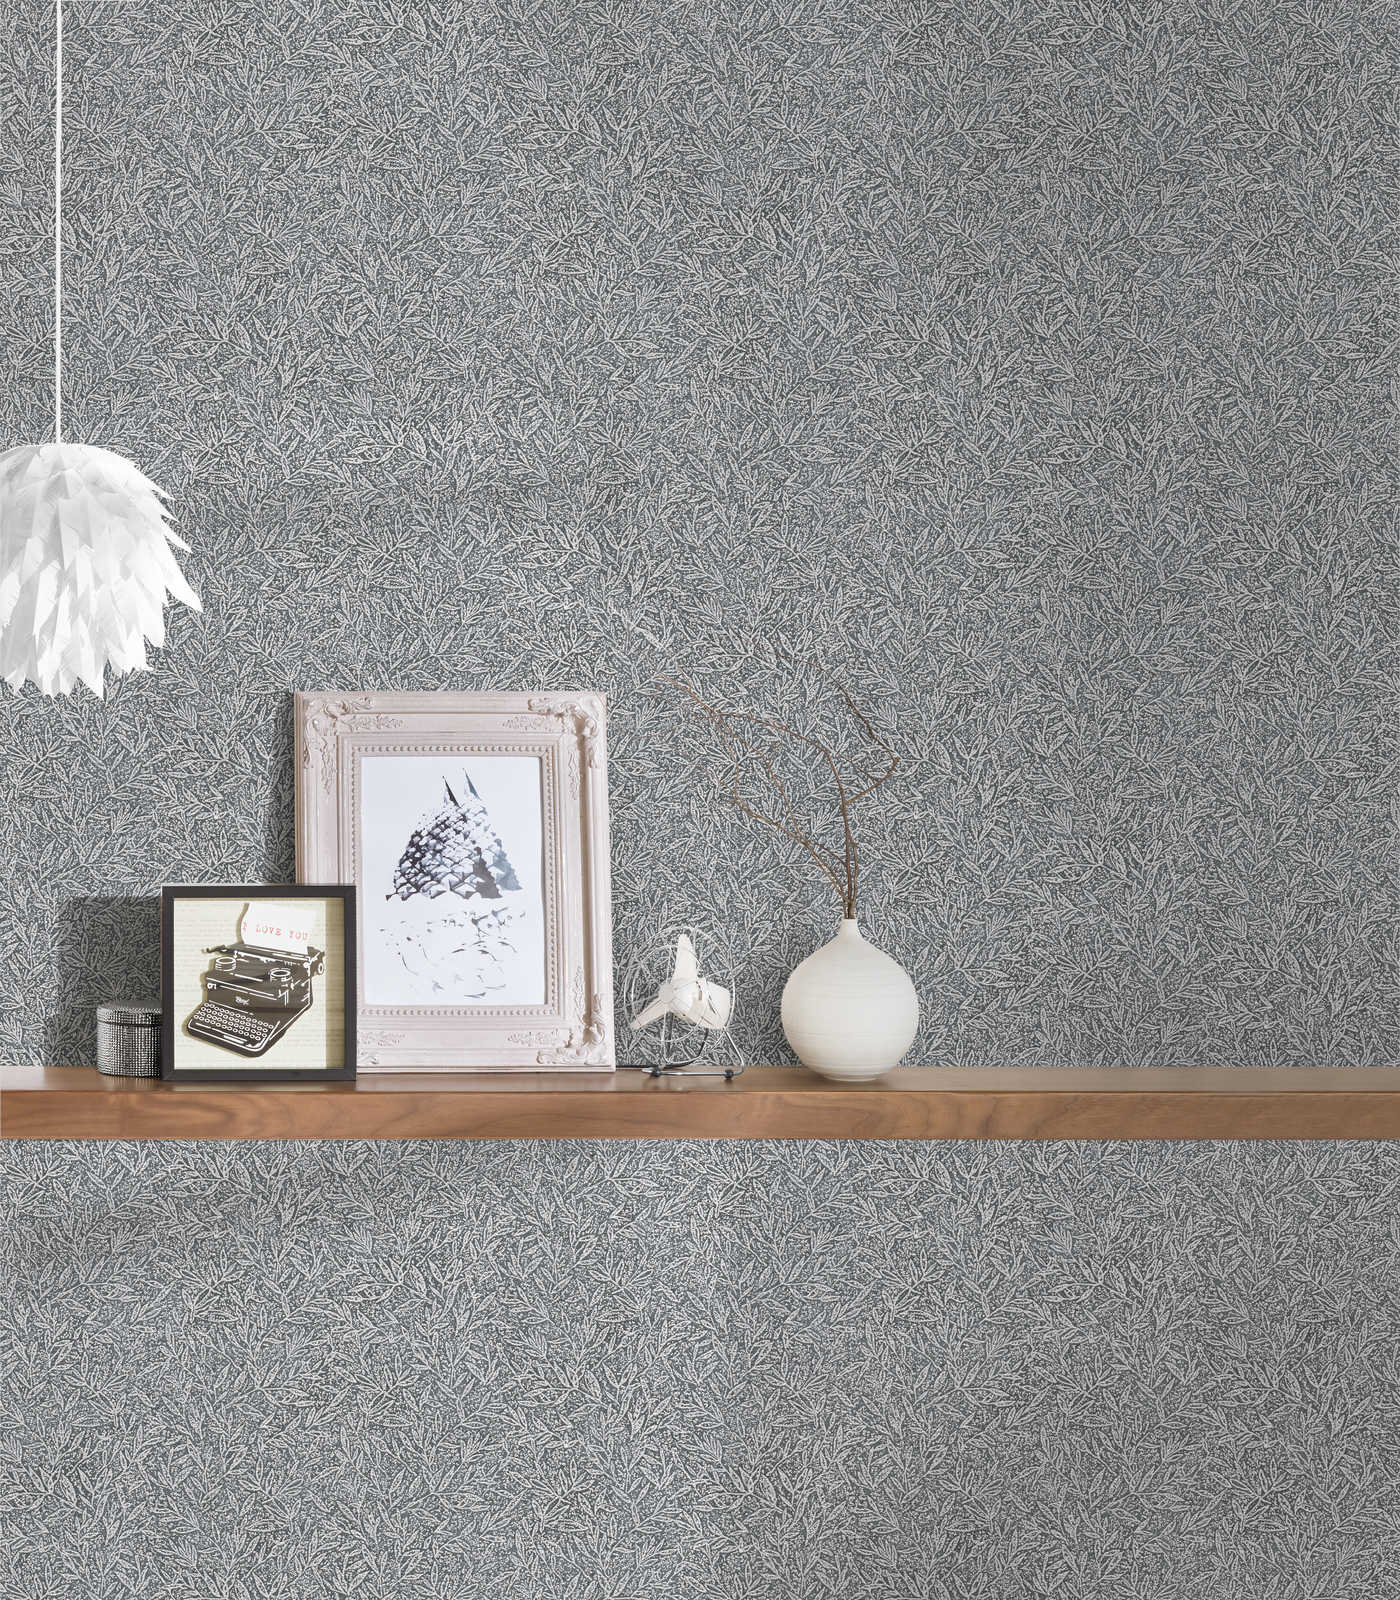             Pattern wallpaper botanical & leaves pattern - grey, metallic
        